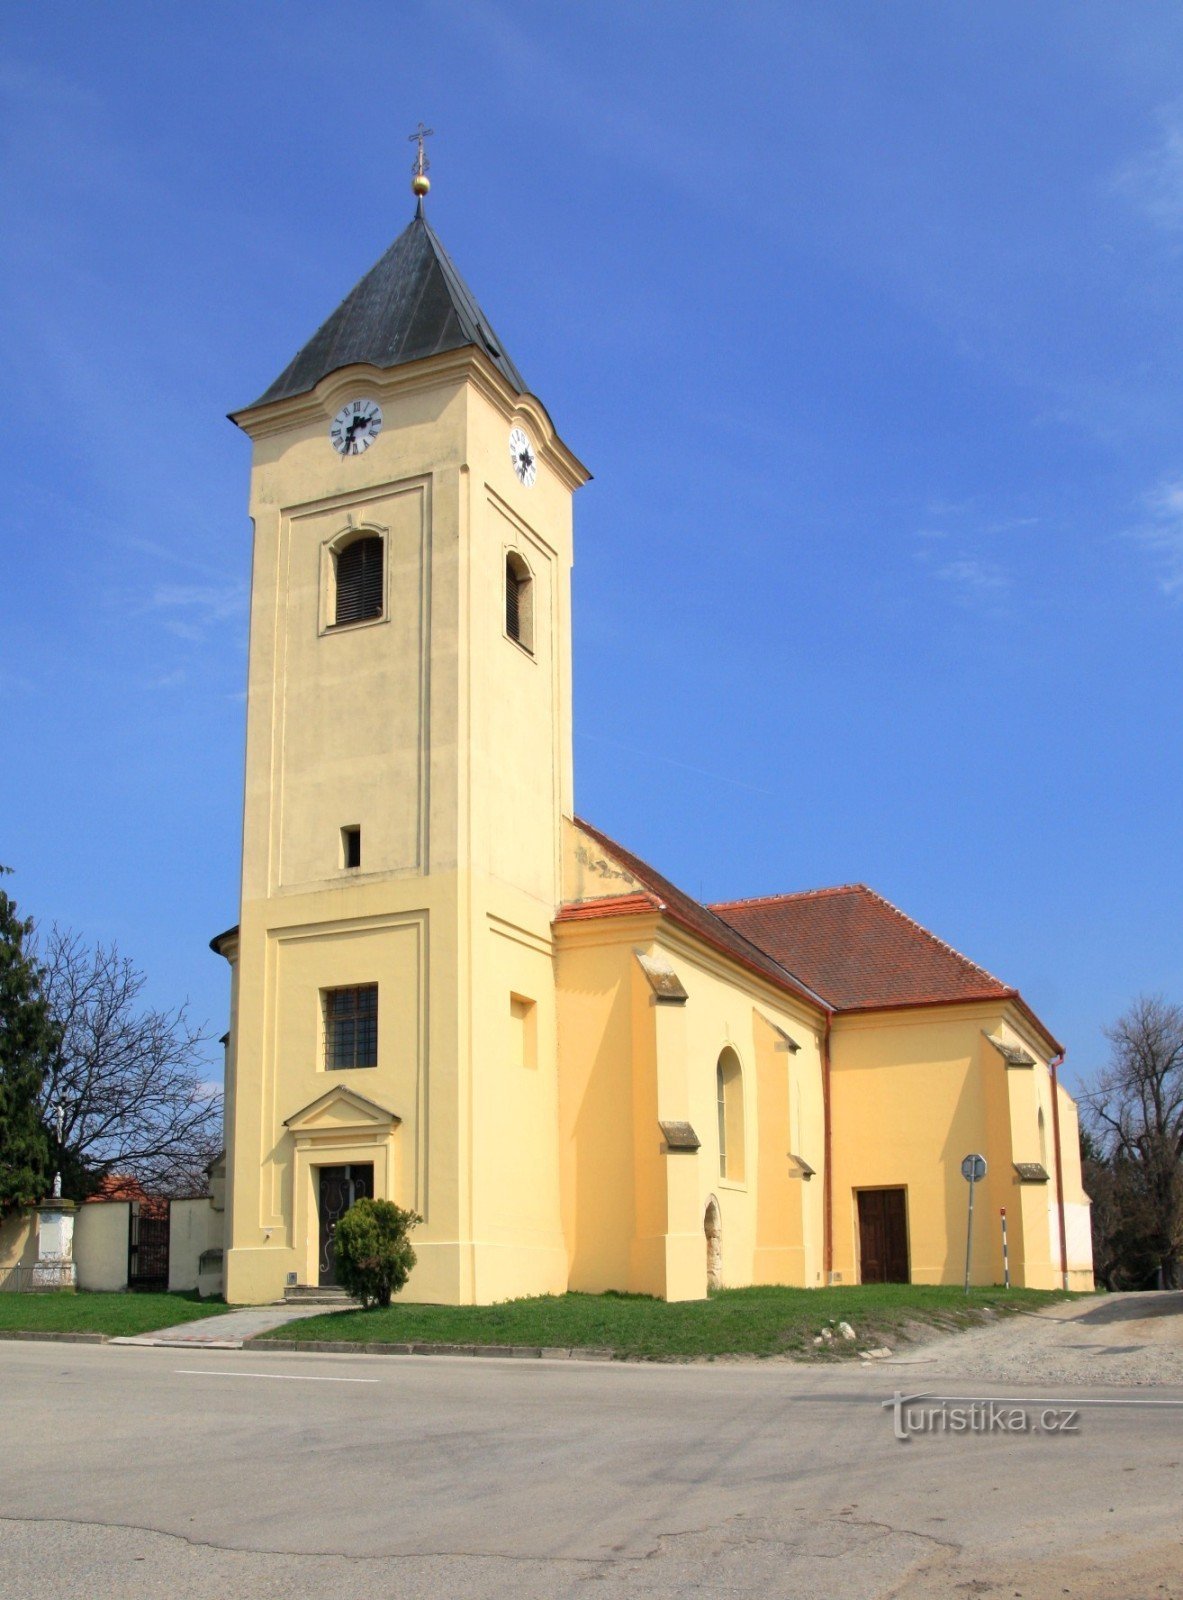 Igreja de S. Oldřich em Strachotín